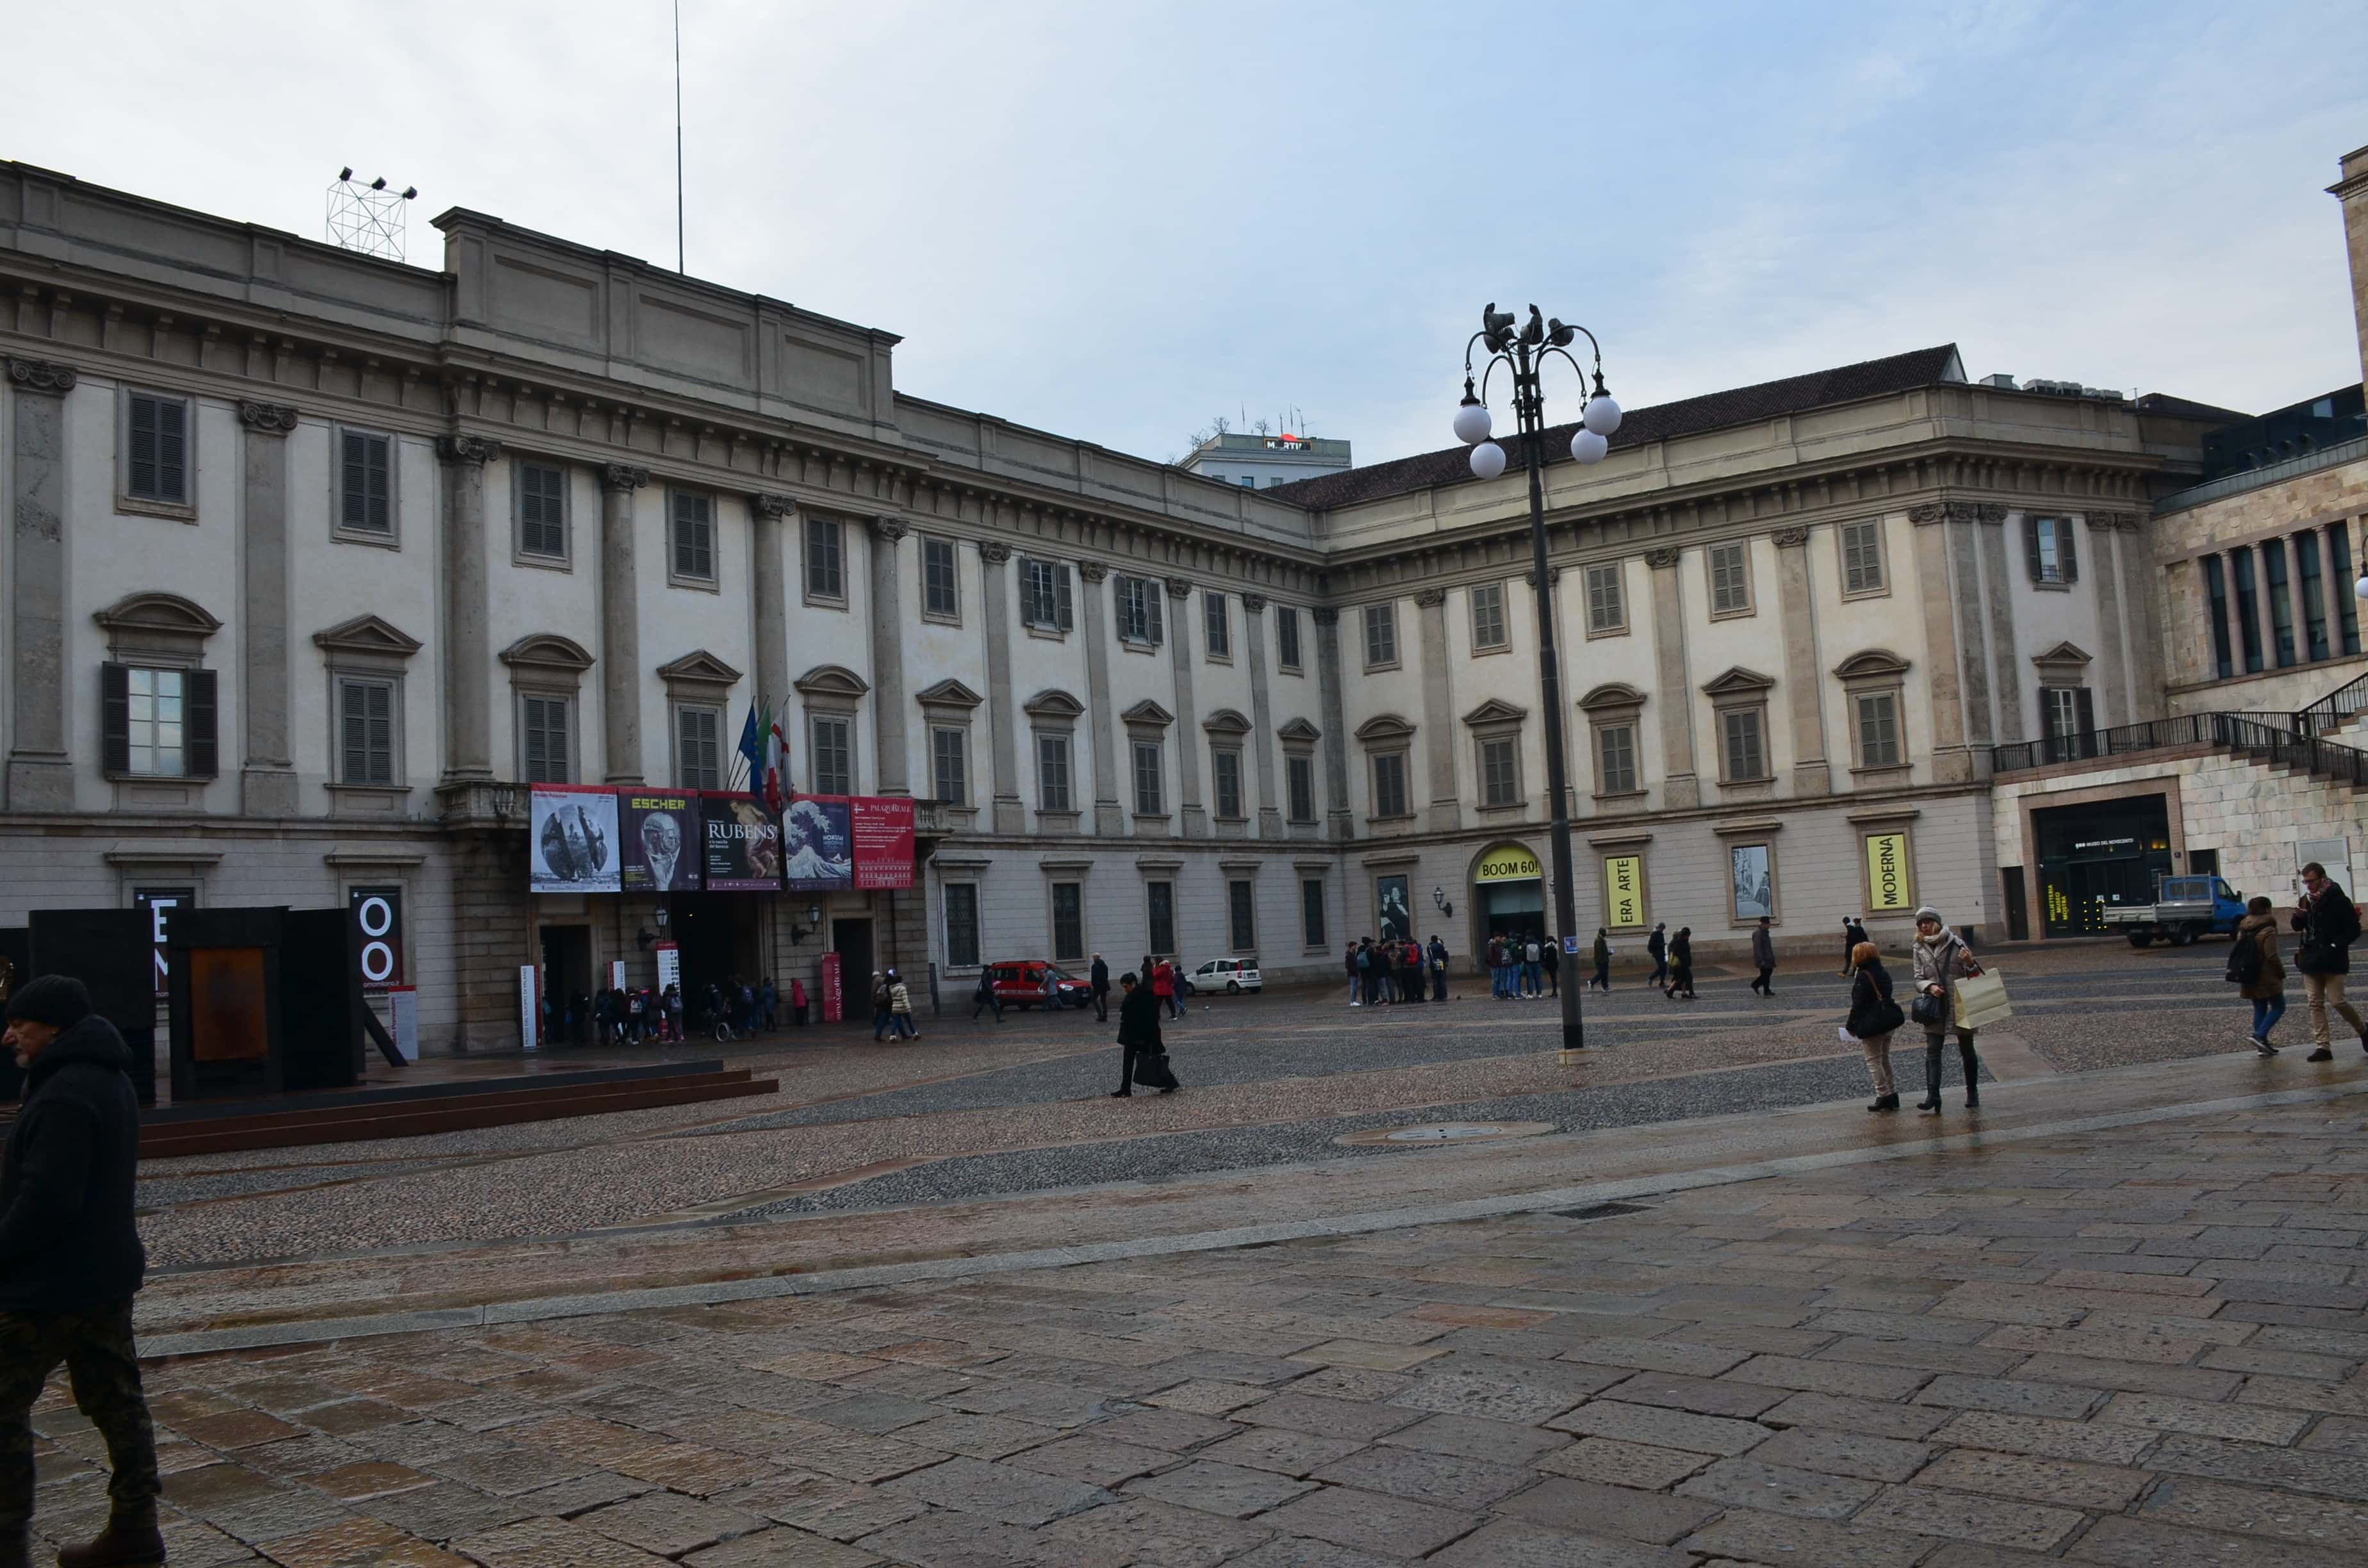 Royal Palace in Milan, Italy